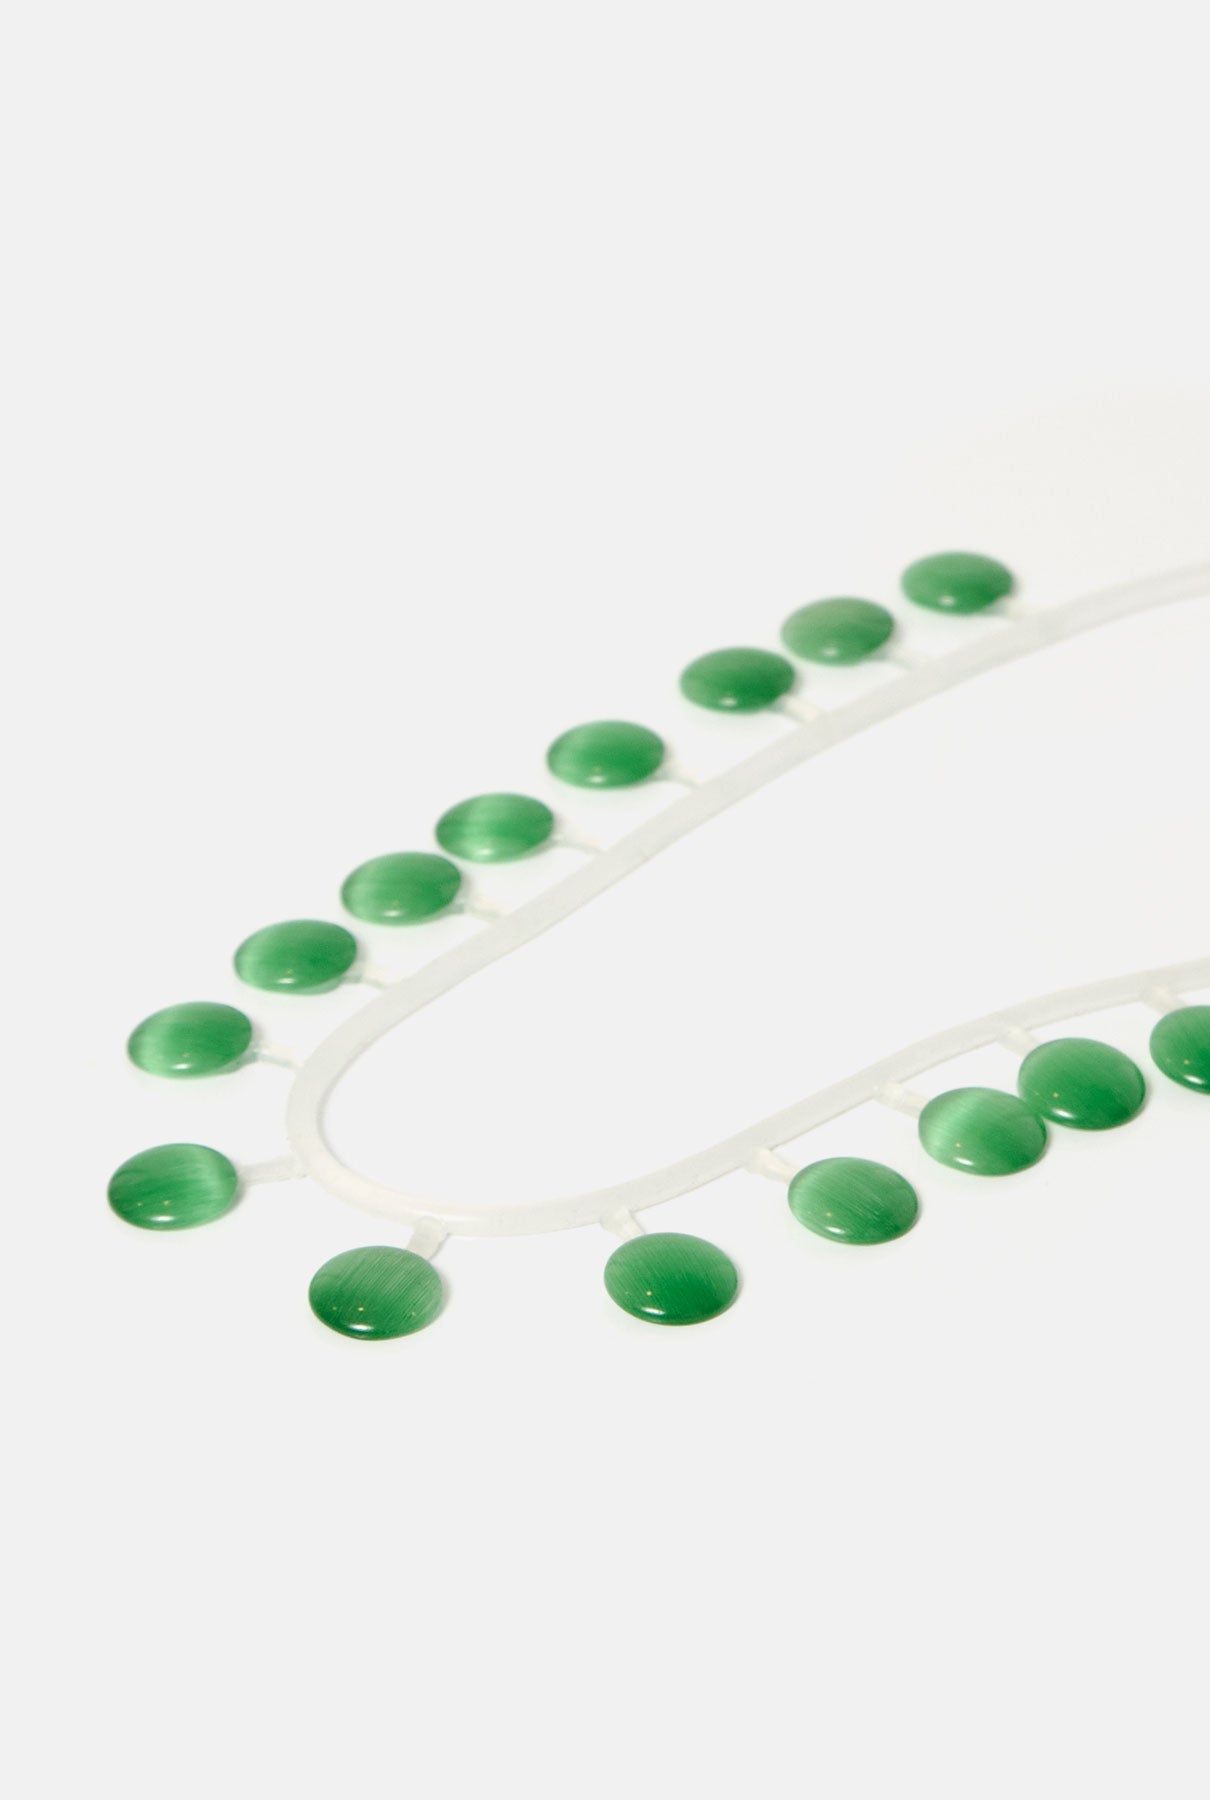 Collar flotante green necklace Joaquin Blanco 